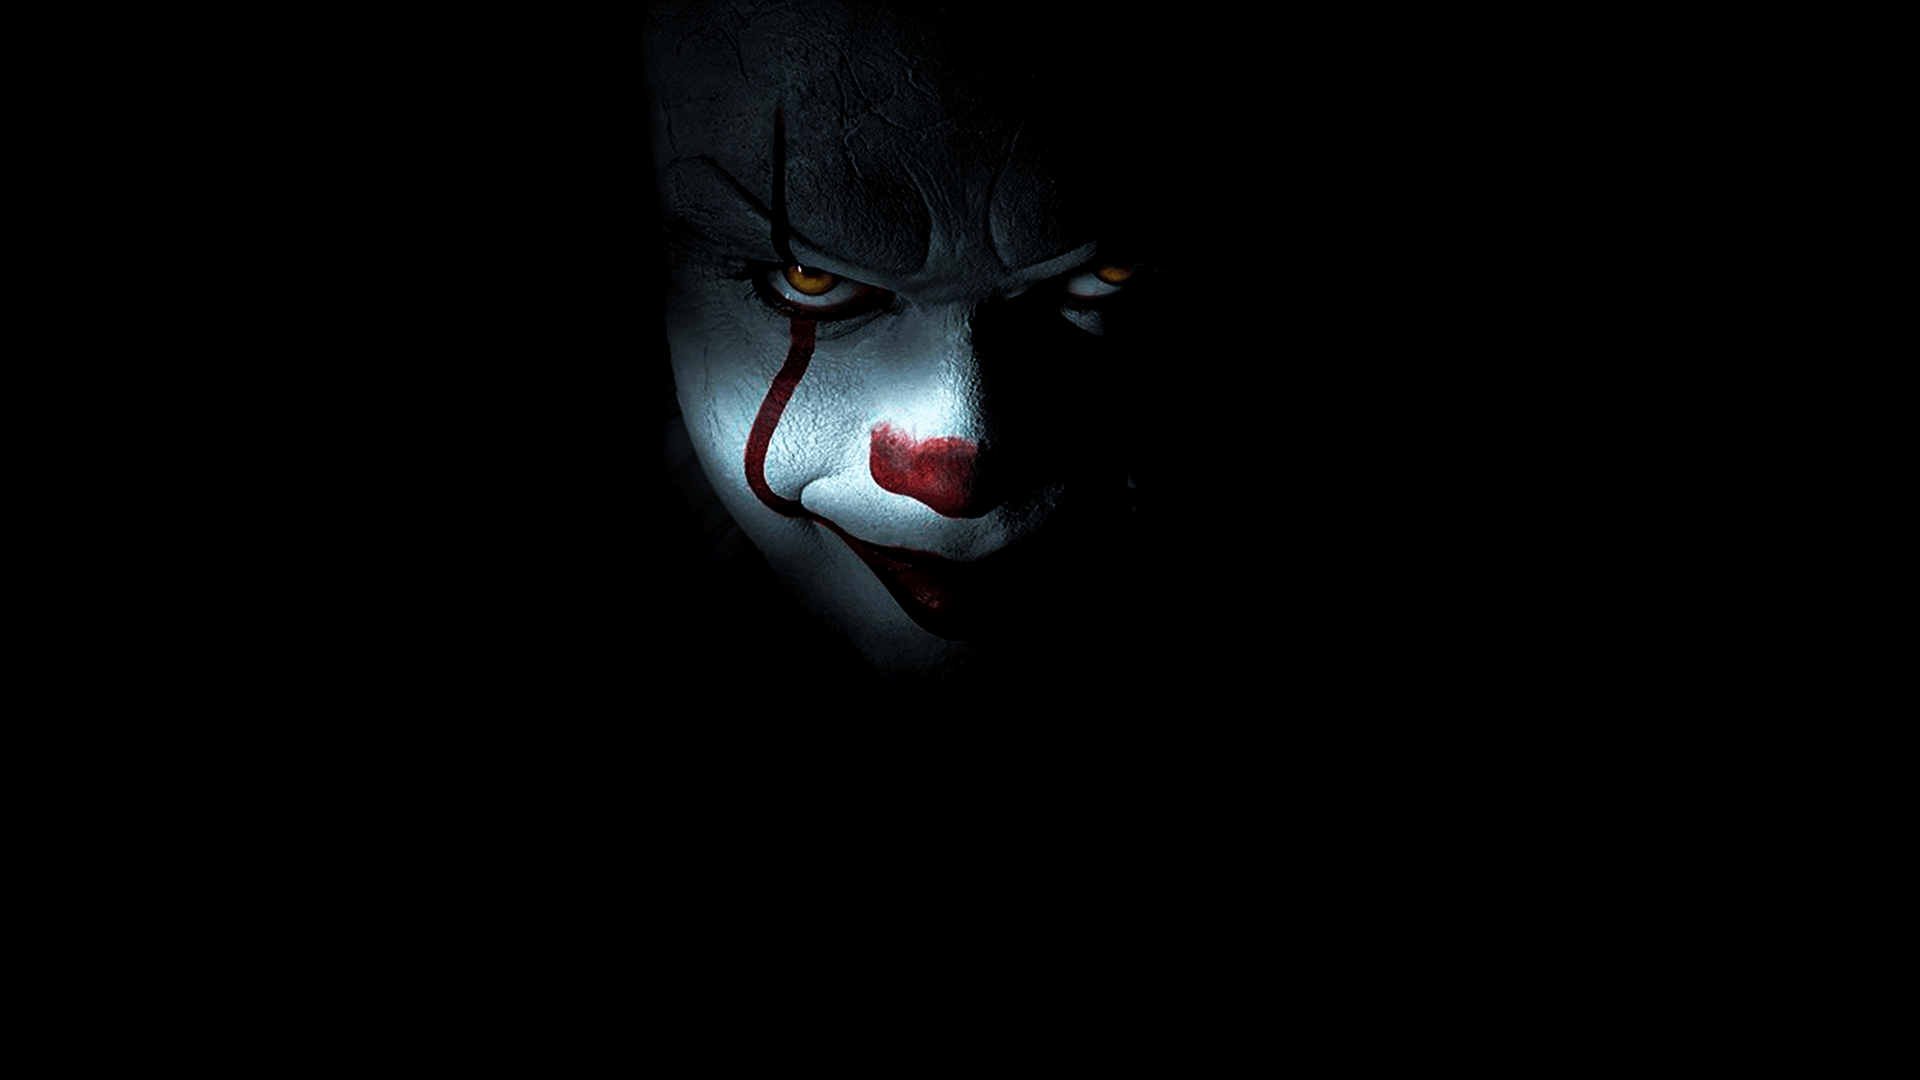 Dark Clown Wallpapers - Top Free Dark Clown Backgrounds - WallpaperAccess